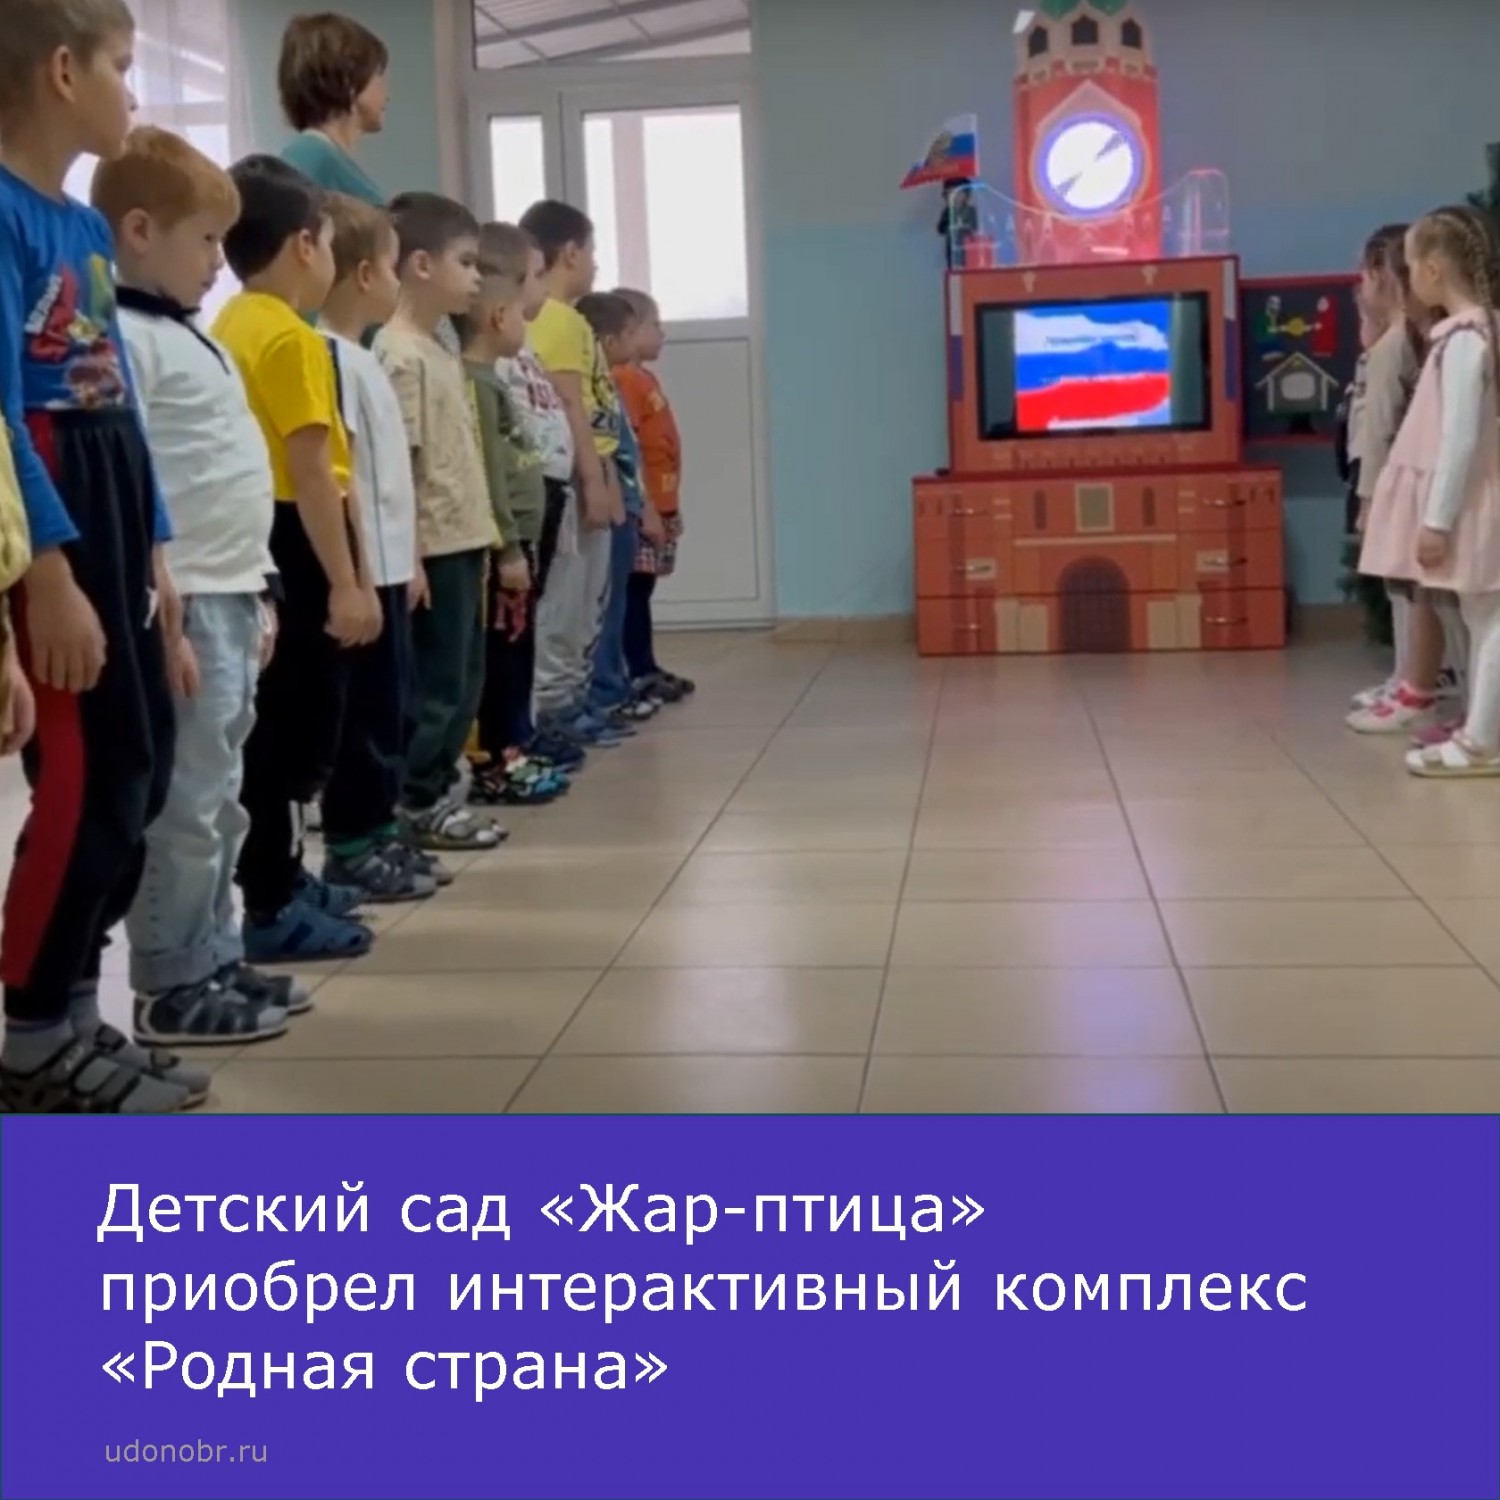 Детский сад «Жар-птица» приобрел интерактивный комплекс «Родная страна»